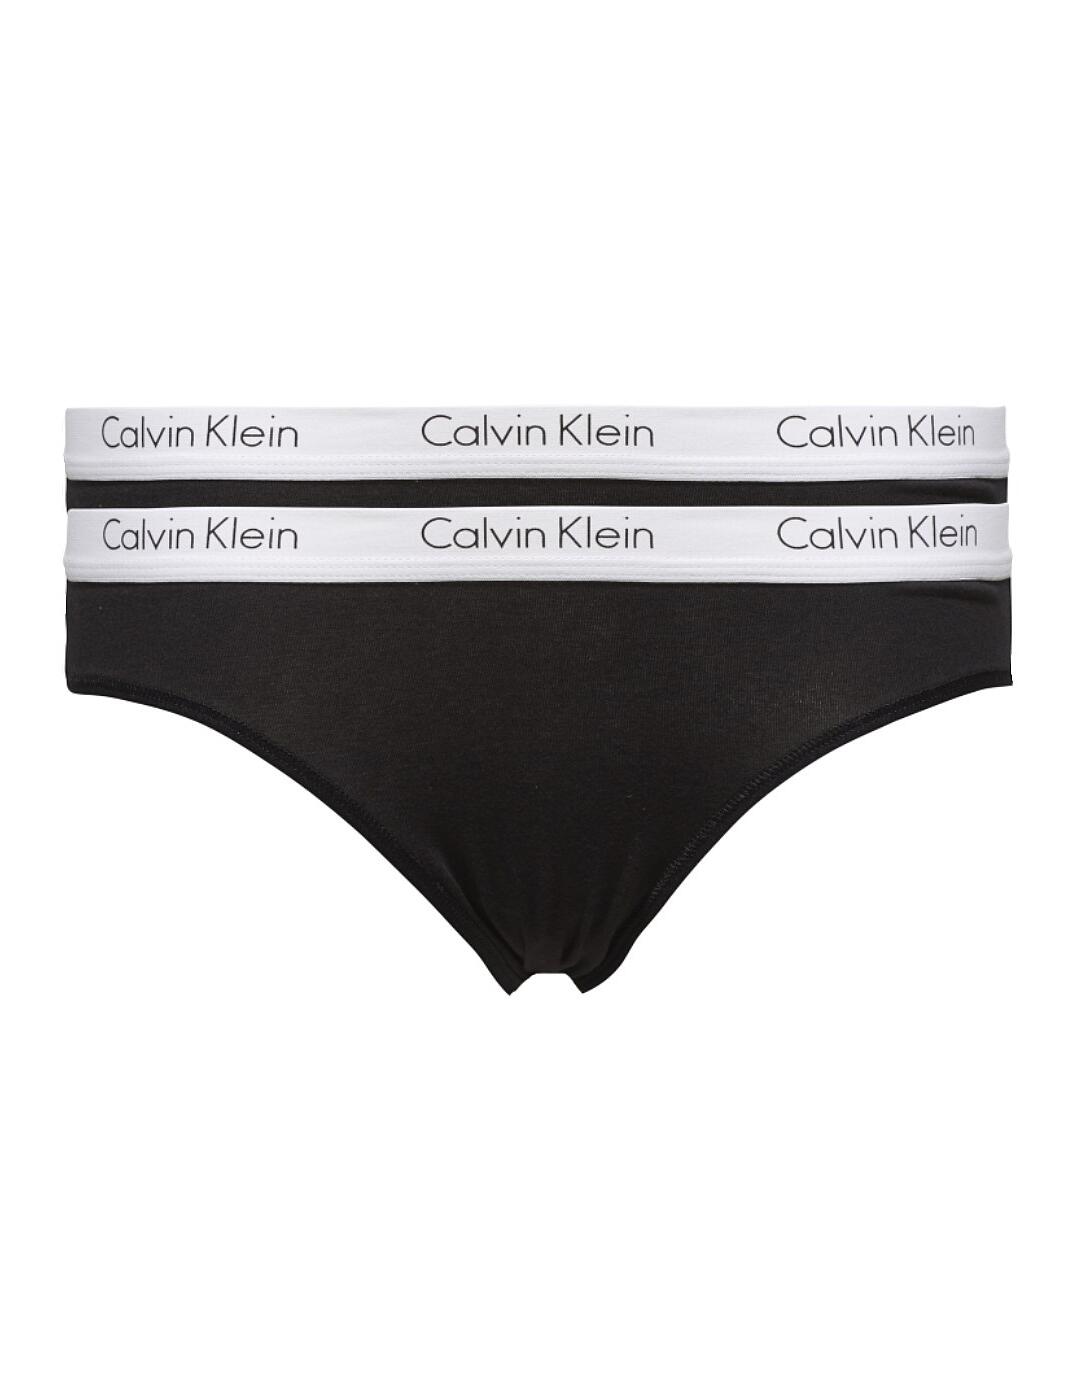 000QD3584E Calvin Klein CK One Cotton 2 Pack Brief - QD3584E Black